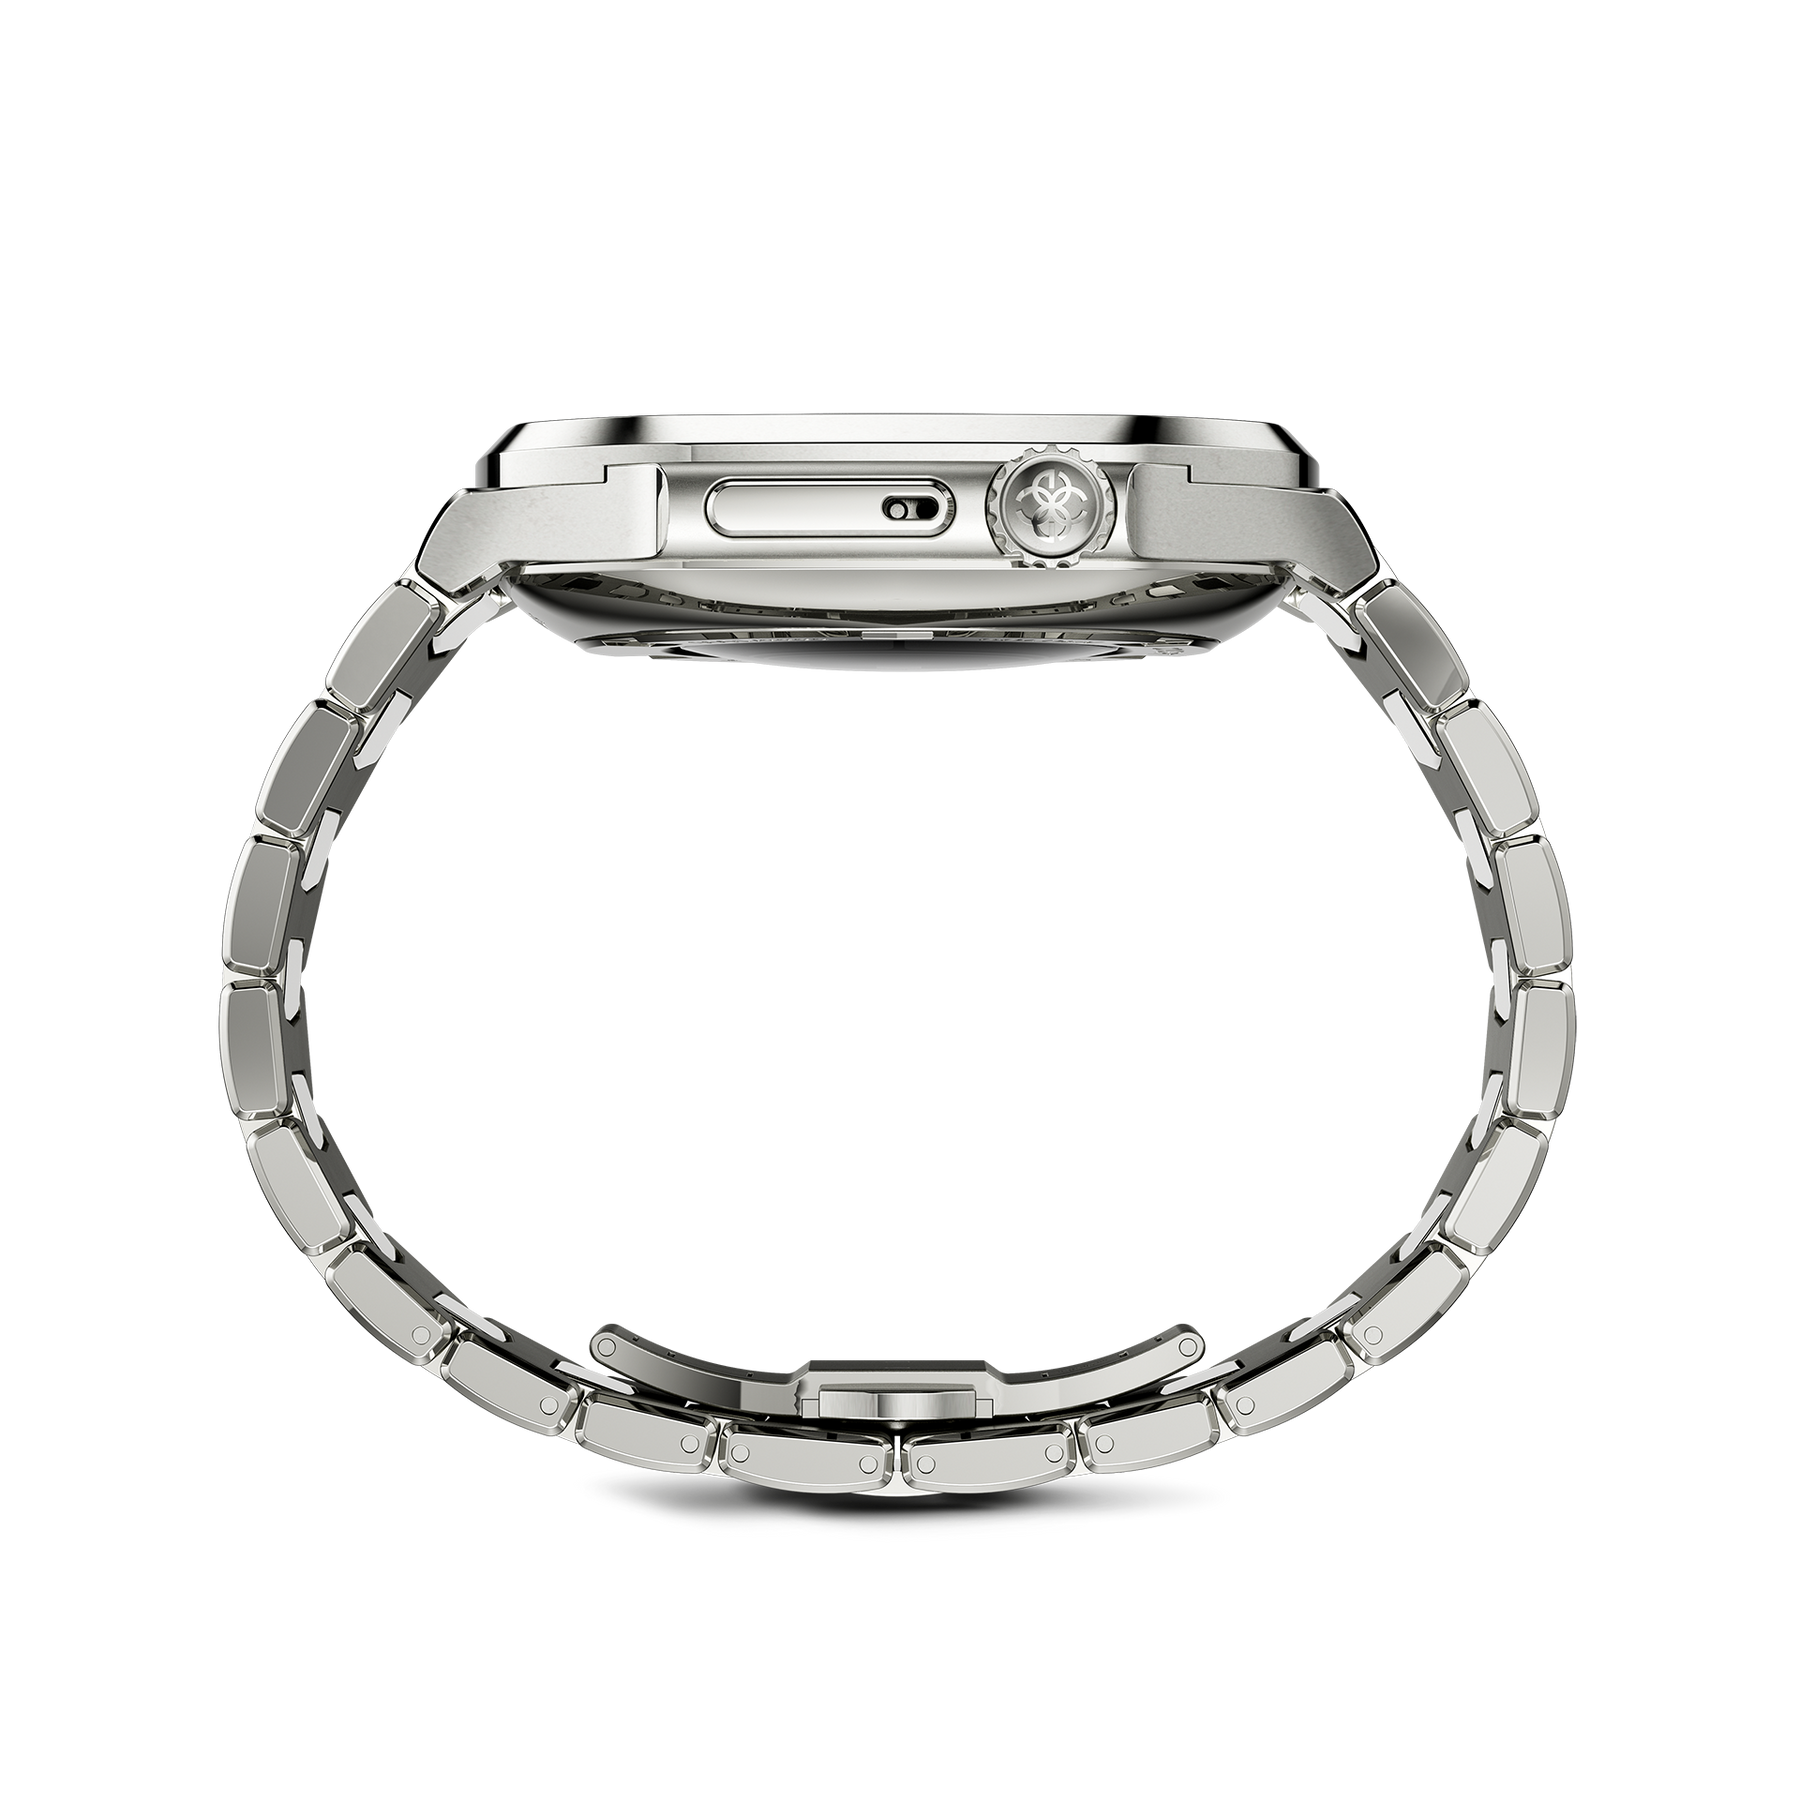 Apple Watch Case RO41/45 - Silver